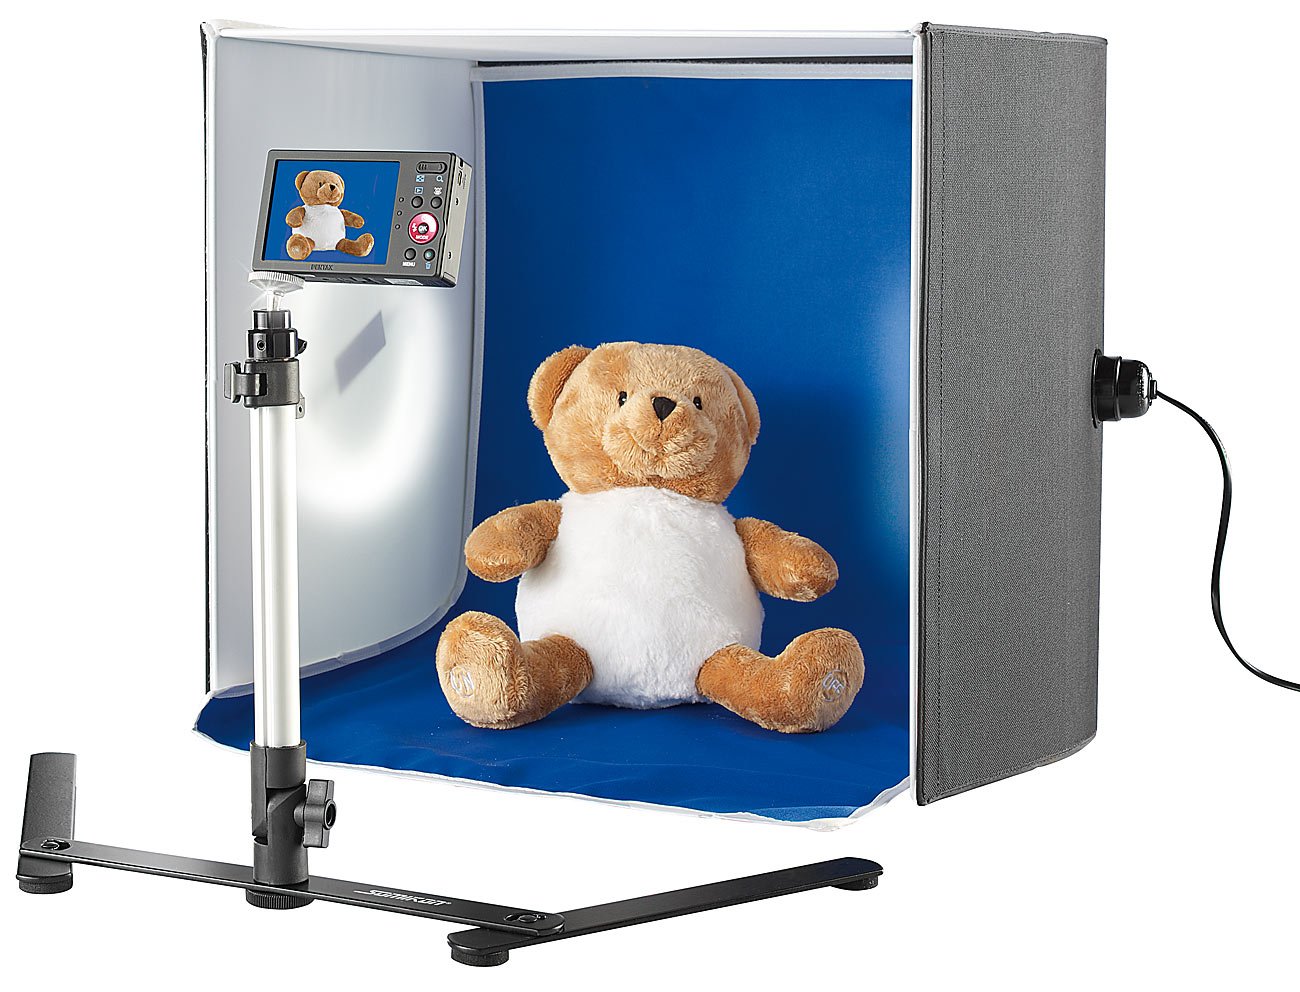 Somikon Fotobox: Professionelle Foto-Studio-Box, Bluescreen/Whitescreen, Stativ (Photobox, Produktfoto Box, Fotohintergrund)